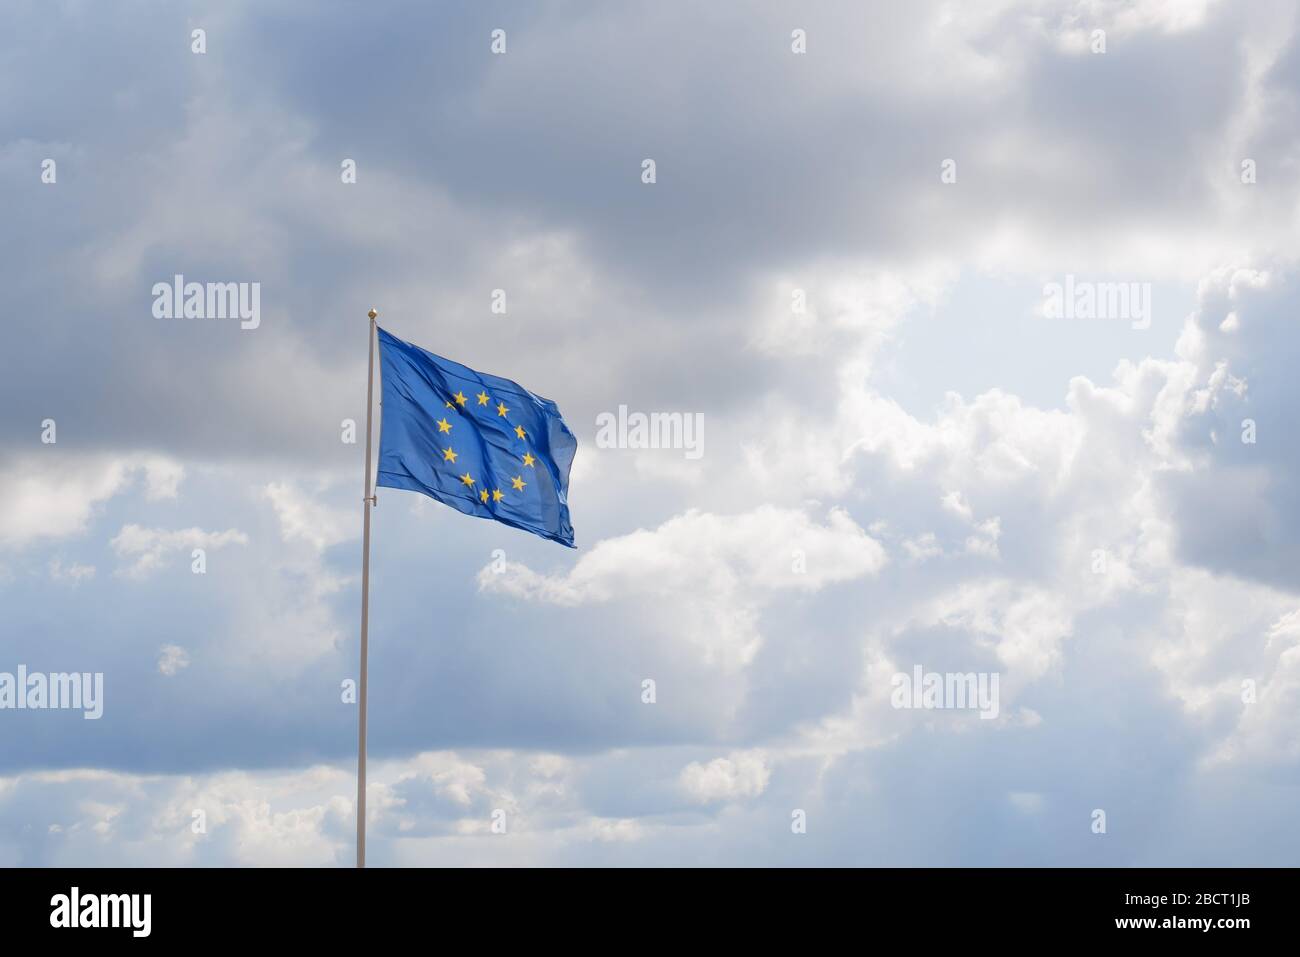 Cờ Liên minh Châu Âu vàng rực rỡ mang lại sự kiêu hãnh và cảm giác tuyệt vời cho chúng ta. Hãy đến xem hình ảnh cờ này và hiểu sâu hơn về ý nghĩa đằng sau nó.